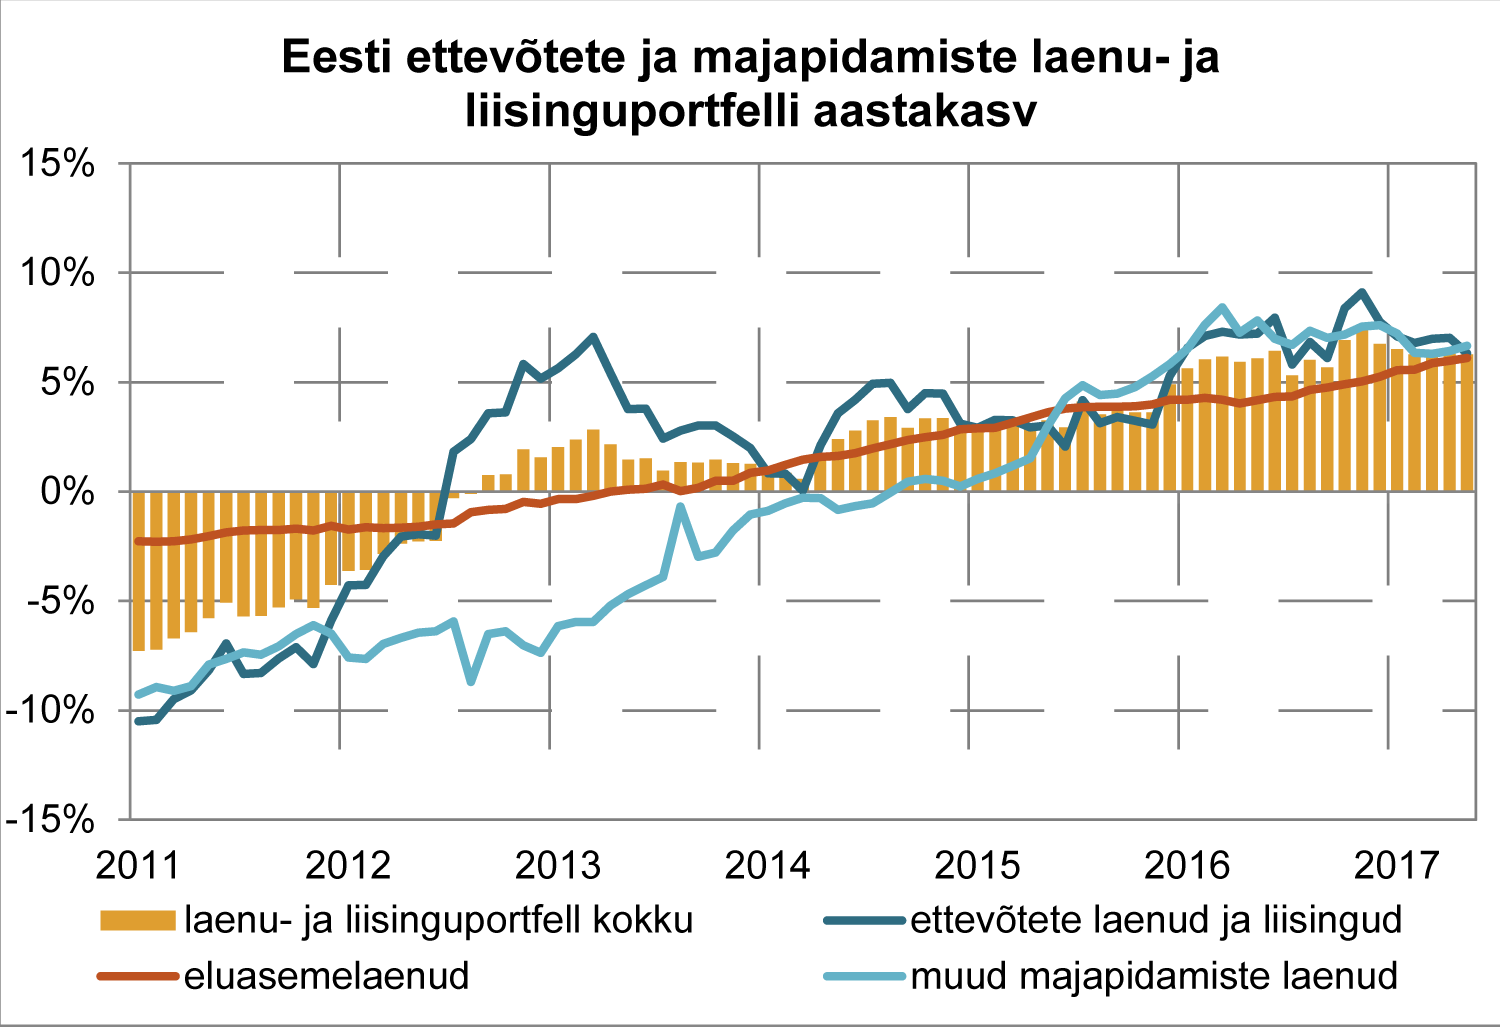 Eesti ettevõtete ja majapidamiste laenu- ja liisinguportfelli aastakasv